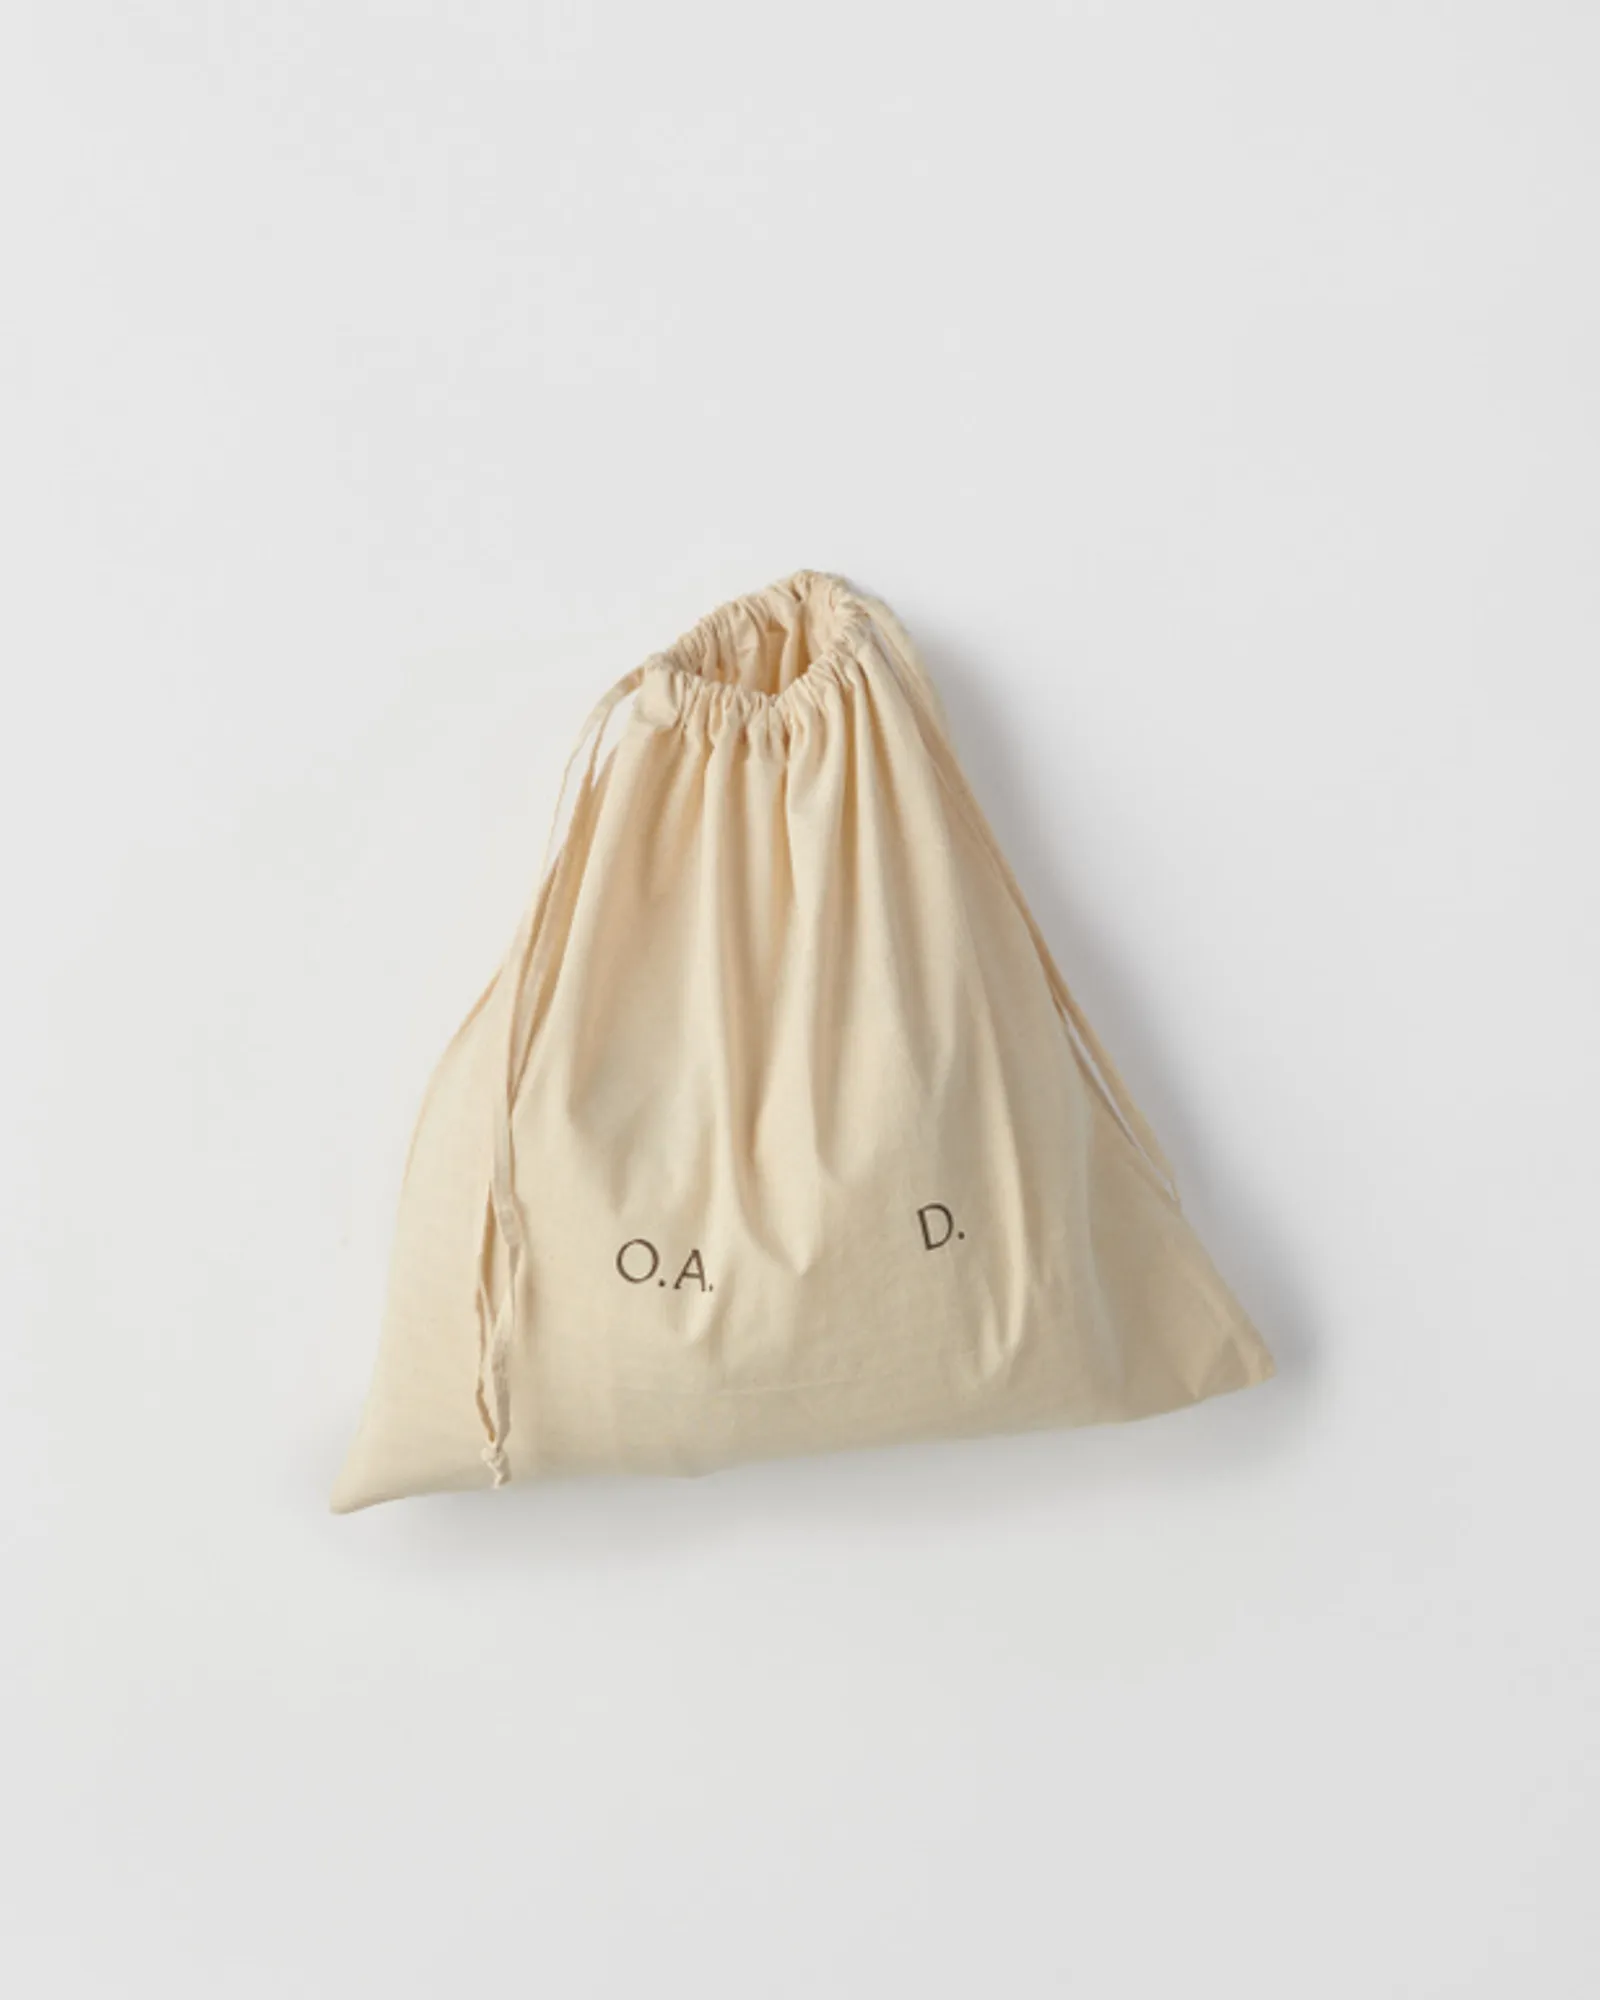 O.A.D. Dust bag